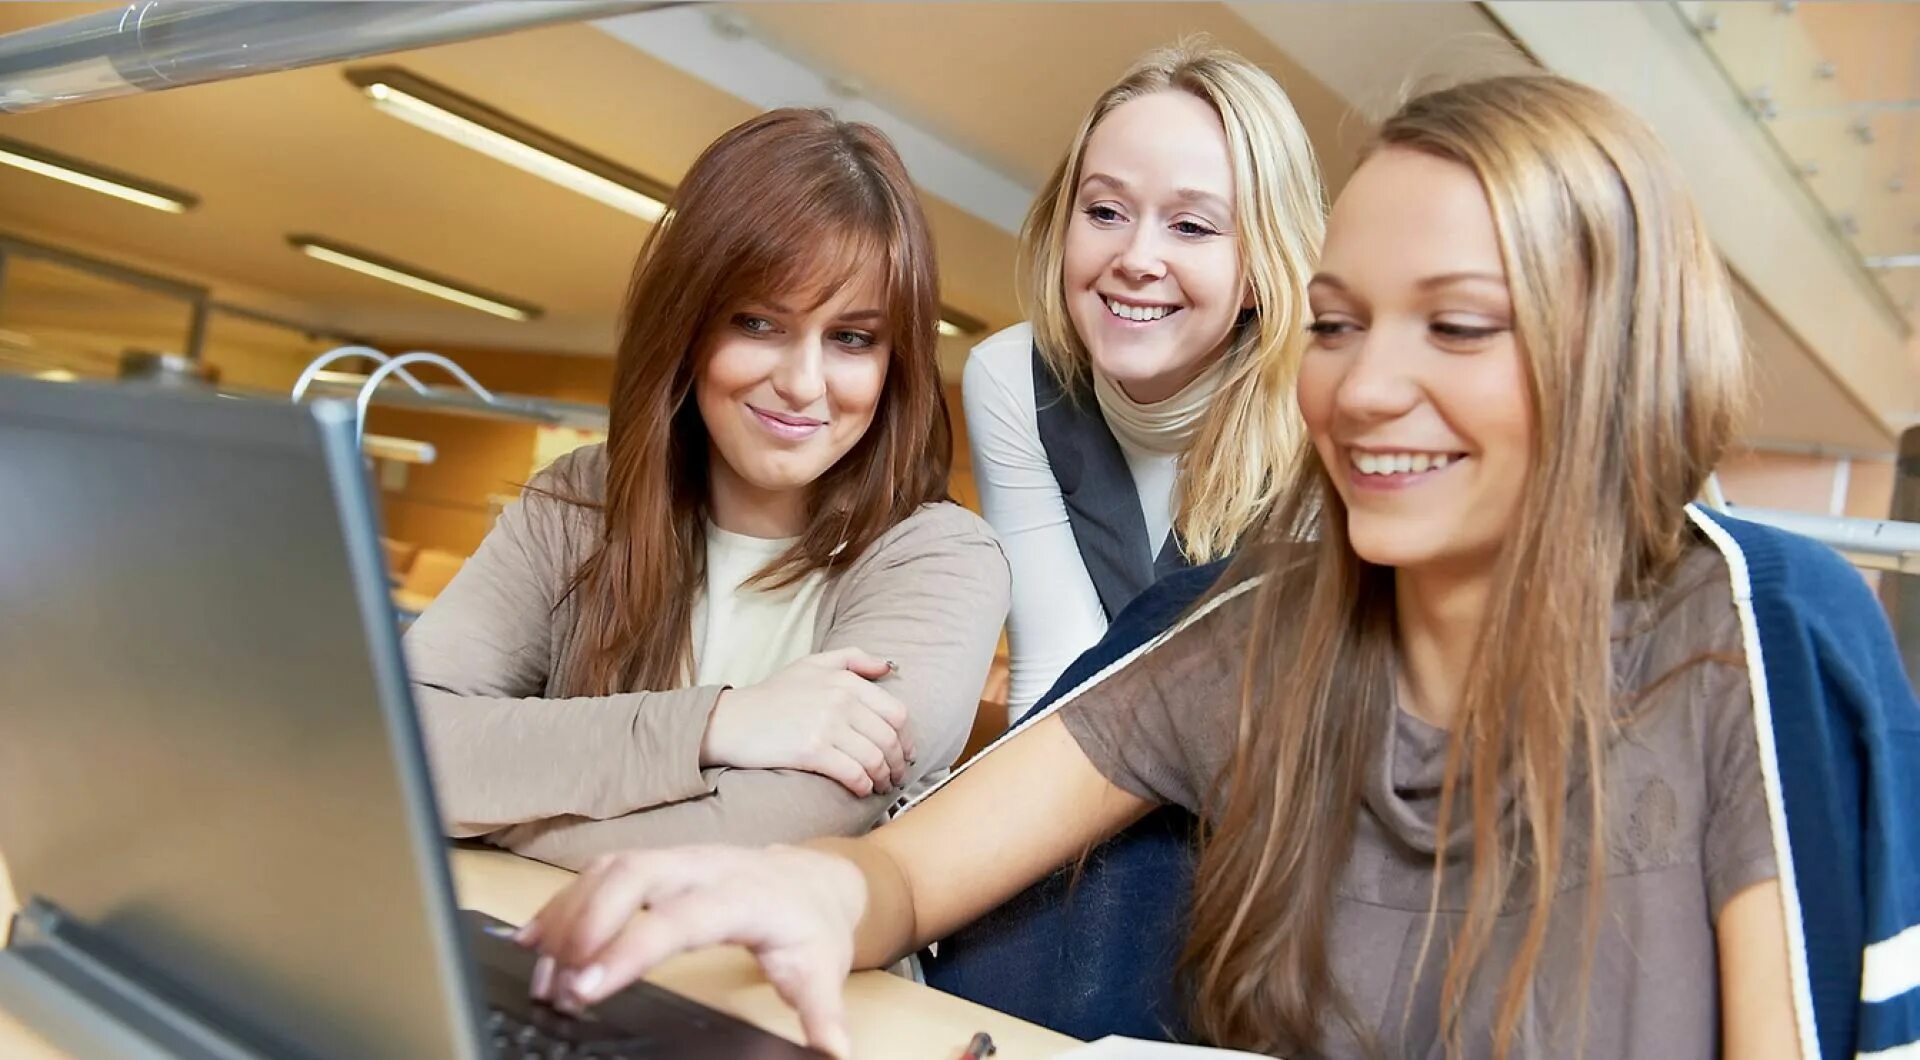 Studentki click. Две девушки за ноутбуком. Студентка с ноутбуком. Студент с ноутбуком. Две девушки за компьютером.